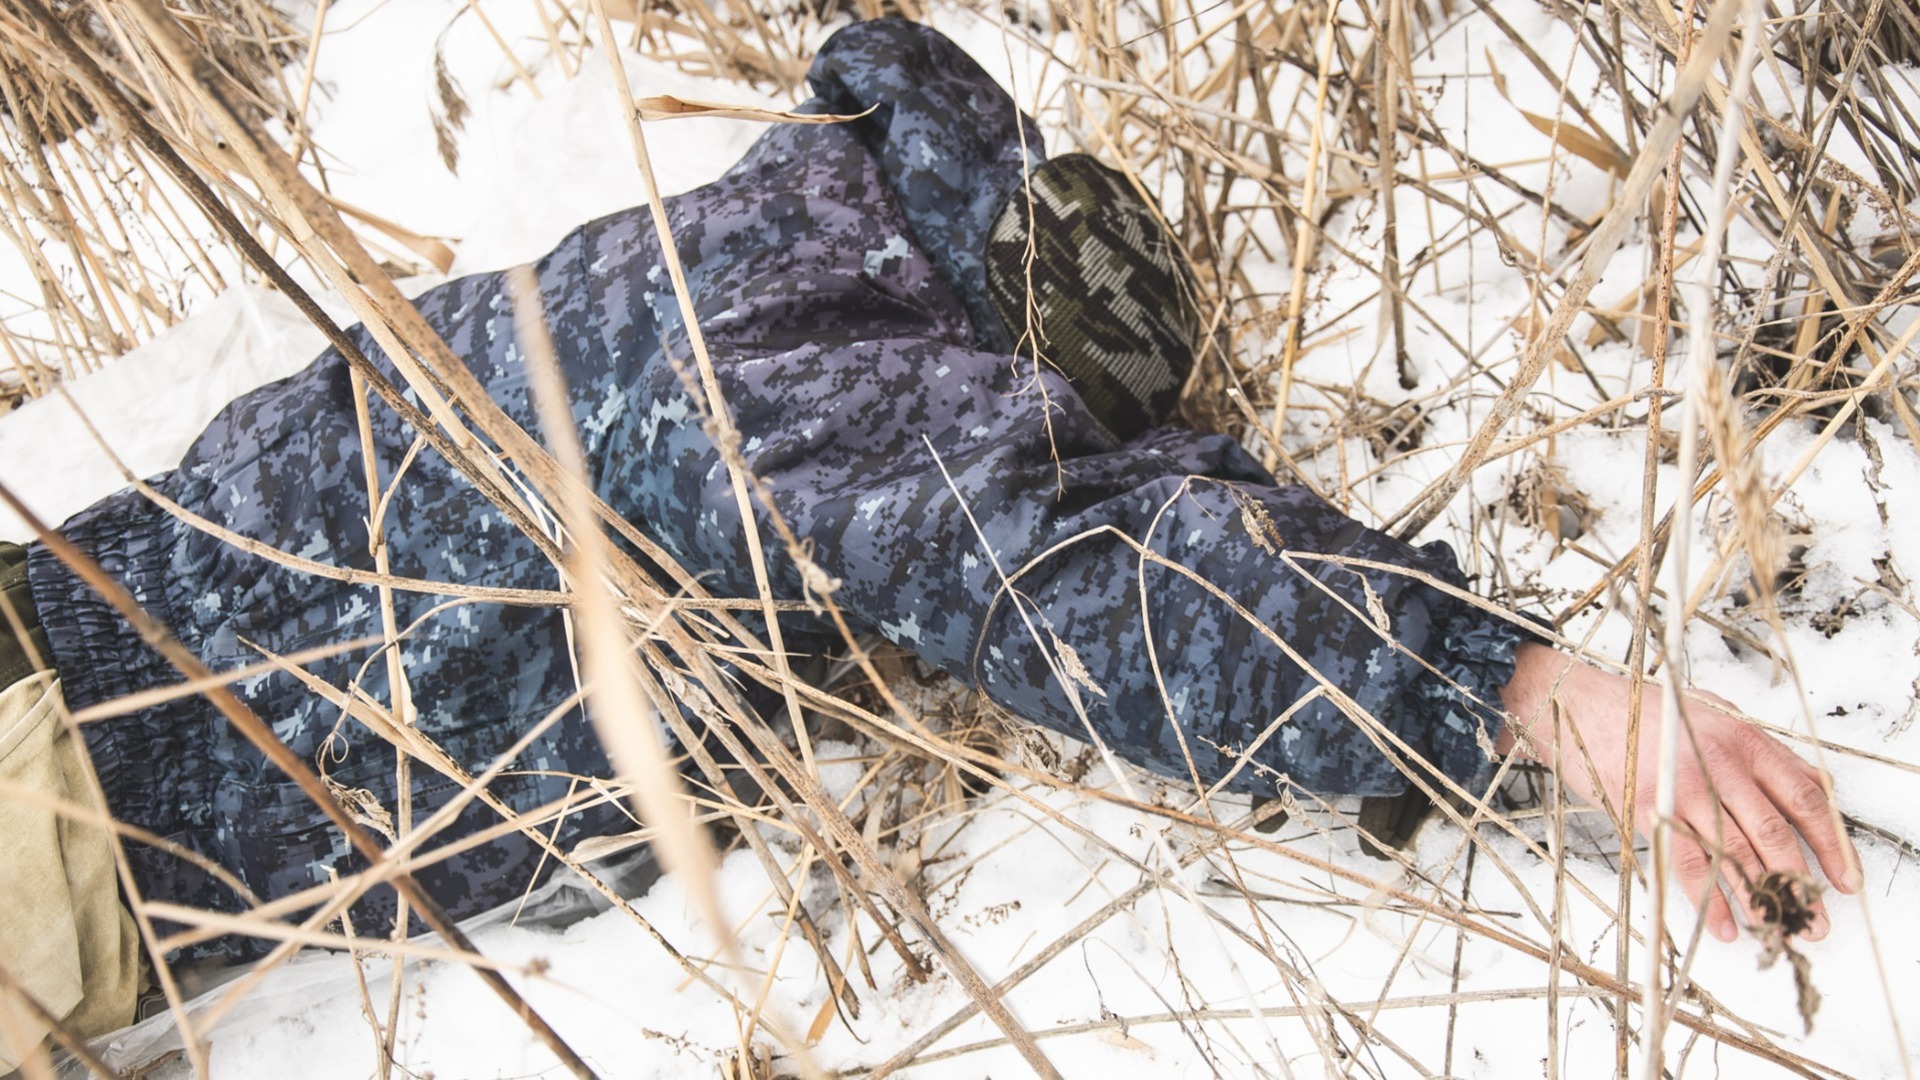 Вечным сном уснул во льдах: в мертвого рыбака нашли в Приморье (18+)